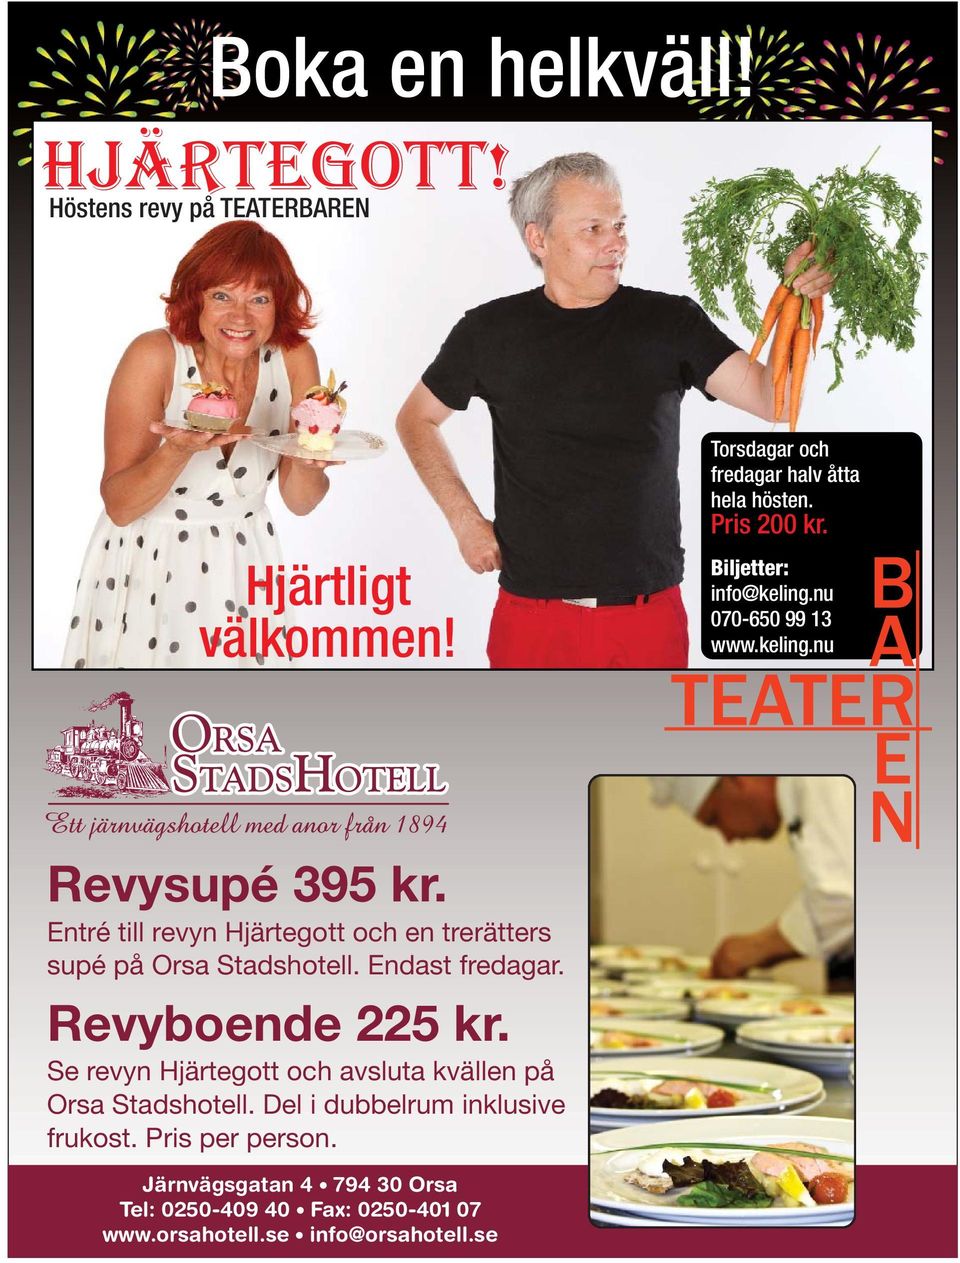 Se revyn Hjärtegott och avsluta kvällen på Orsa Stadshotell. Del i dubbelrum inklusive frukost. Pris per person.